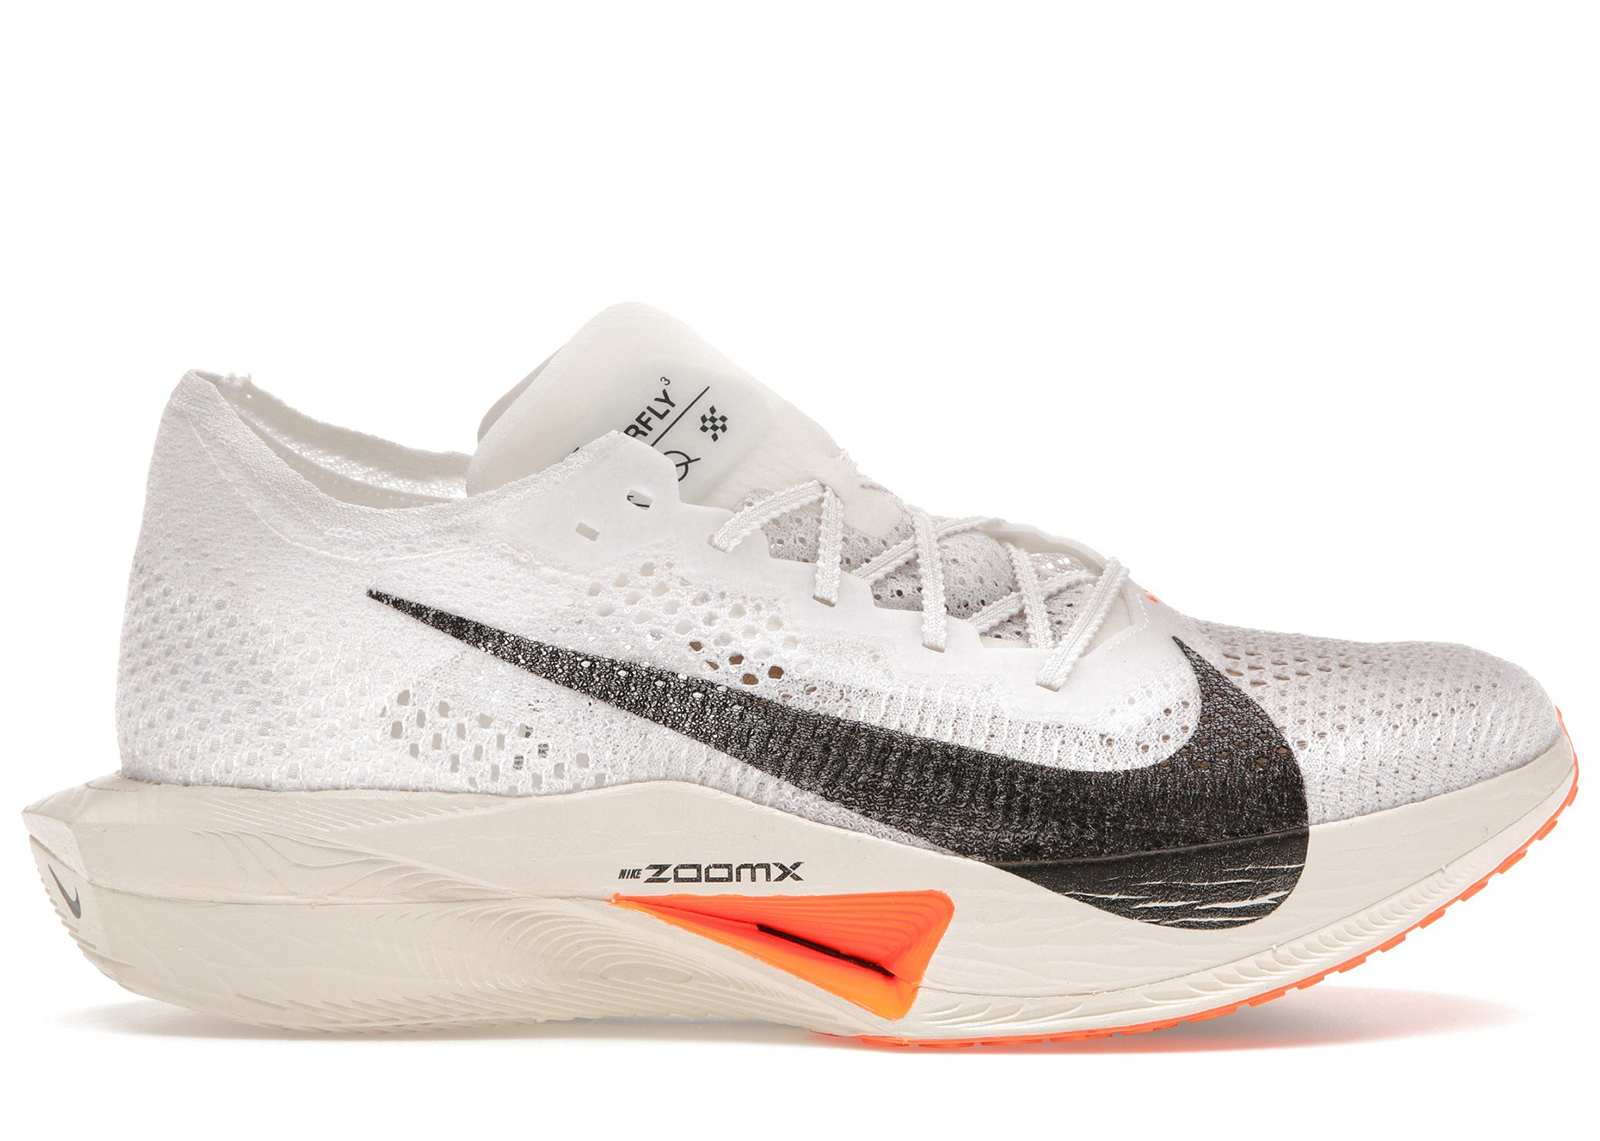 Nike ZoomX Vaporfly Next% 3 Prototype メンズ - DX7957-100 - JP